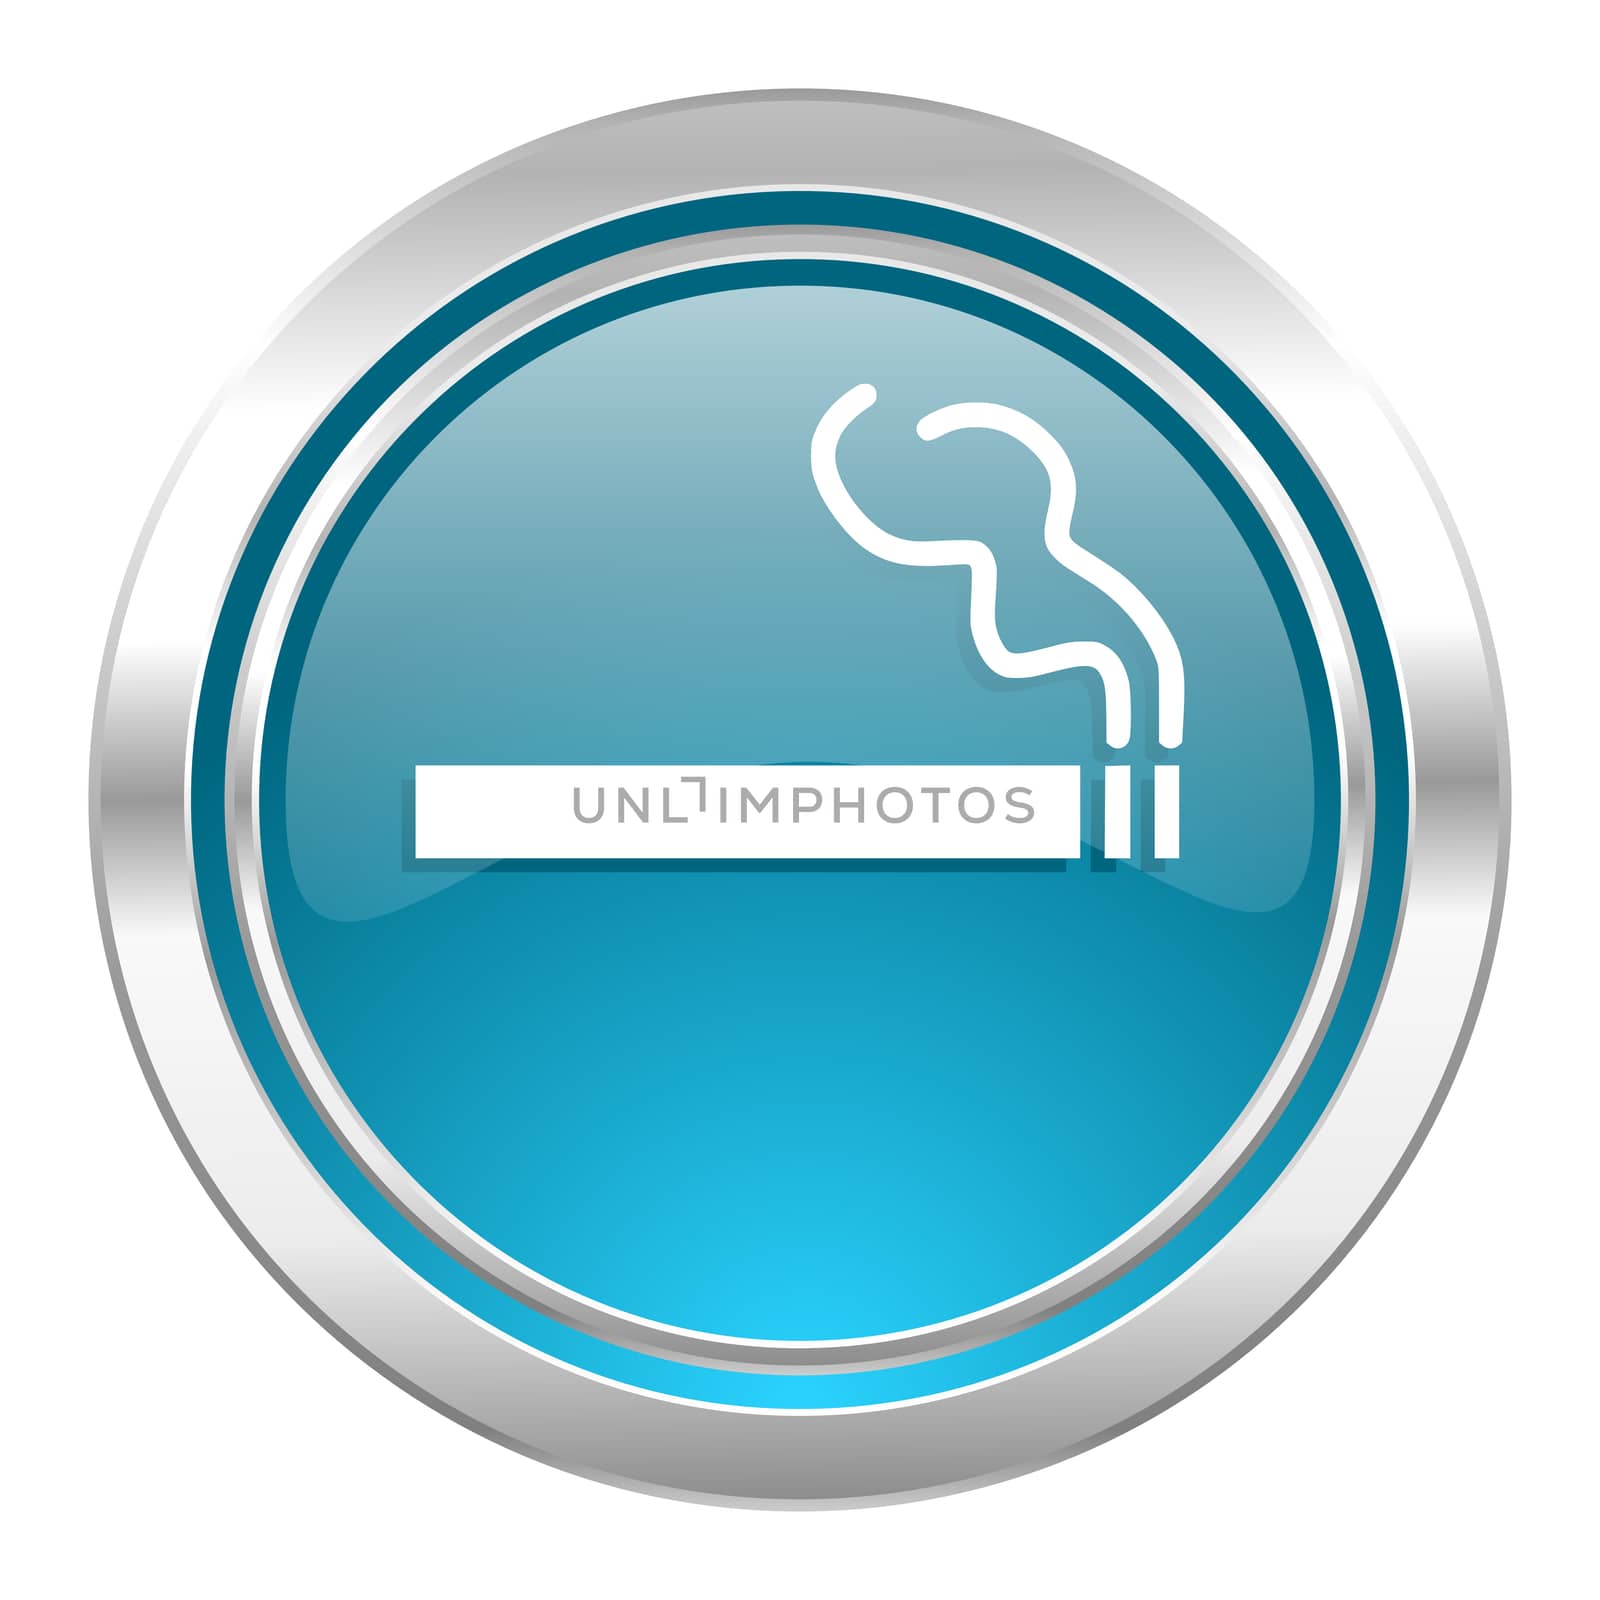 cigarette icon, nicotine sign by alexwhite